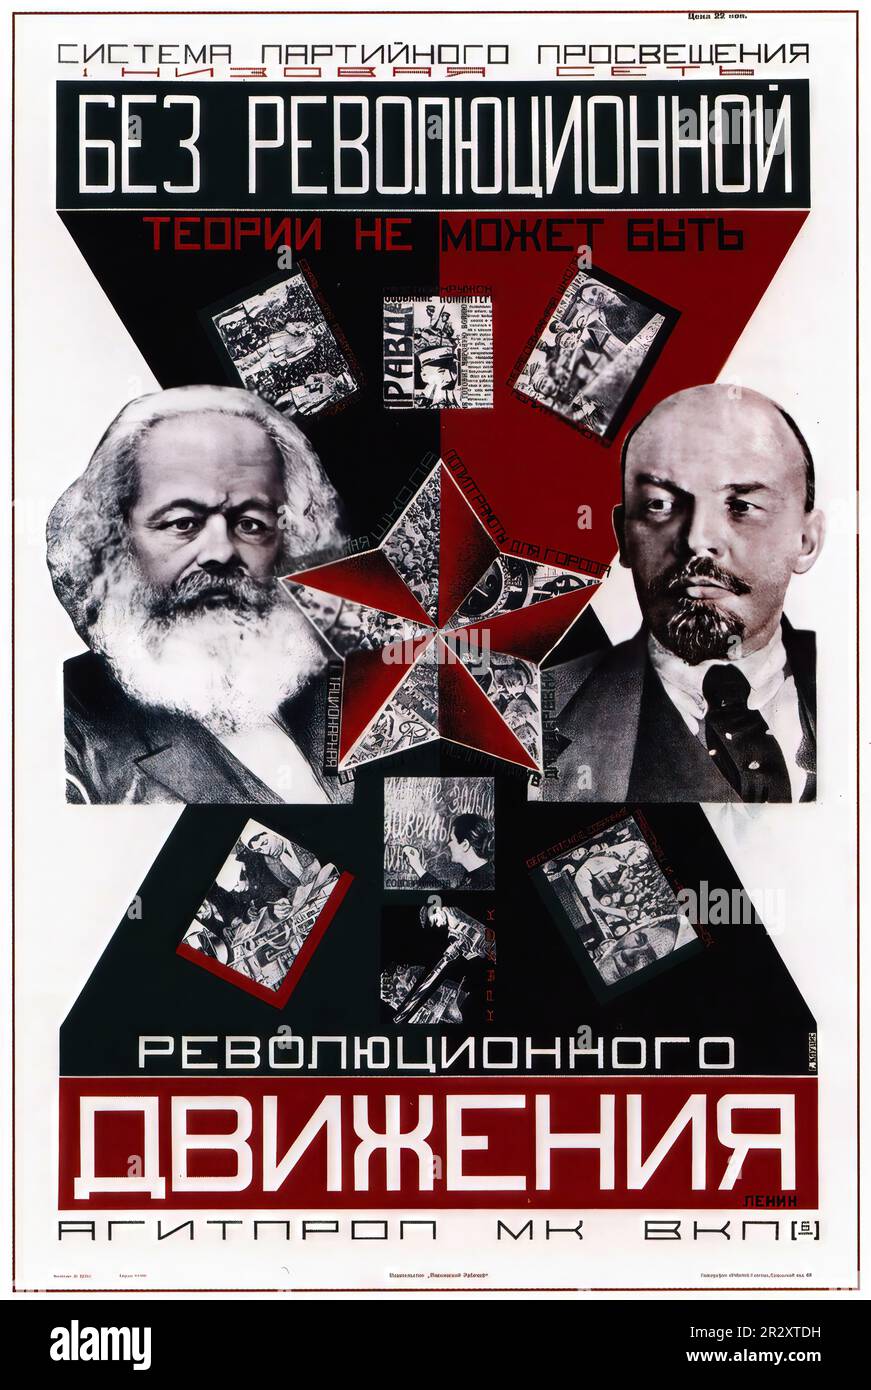 Carteles de propaganda que representan a Lenin, quien fundó la Unión Soviética, un estado socialista de partido único gobernado por el Partido Comunista ideológicamente marxista Foto de stock